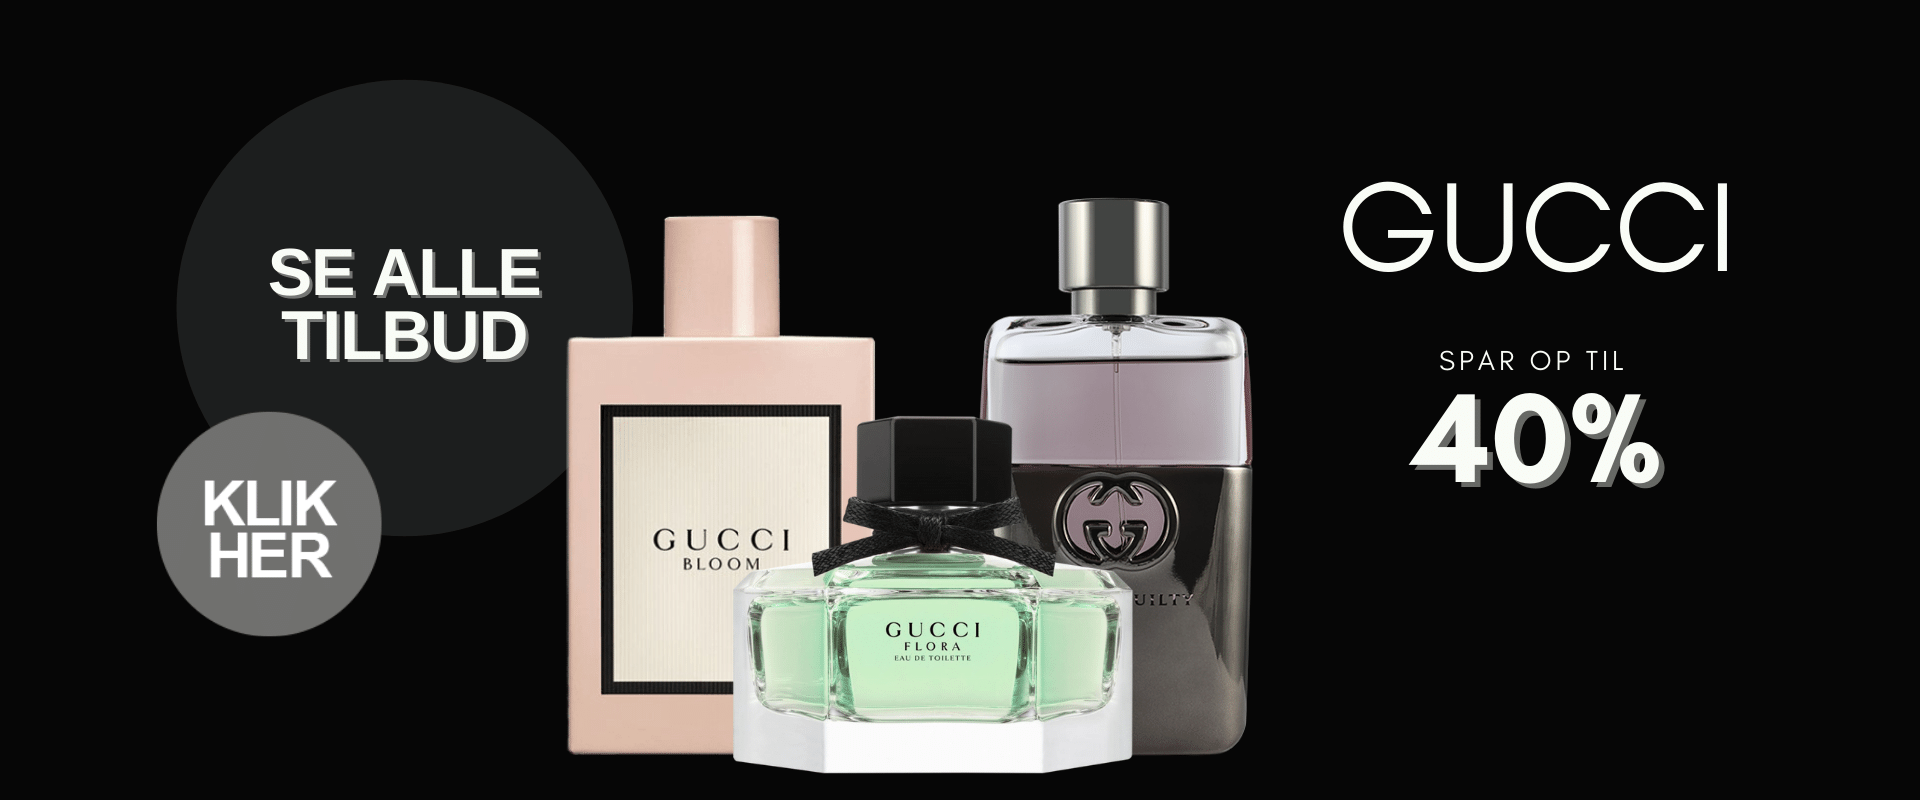 skruenøgle overførsel spion GUCCI Parfume | Spar op til 55% - Køb hos BilligParfume.dk